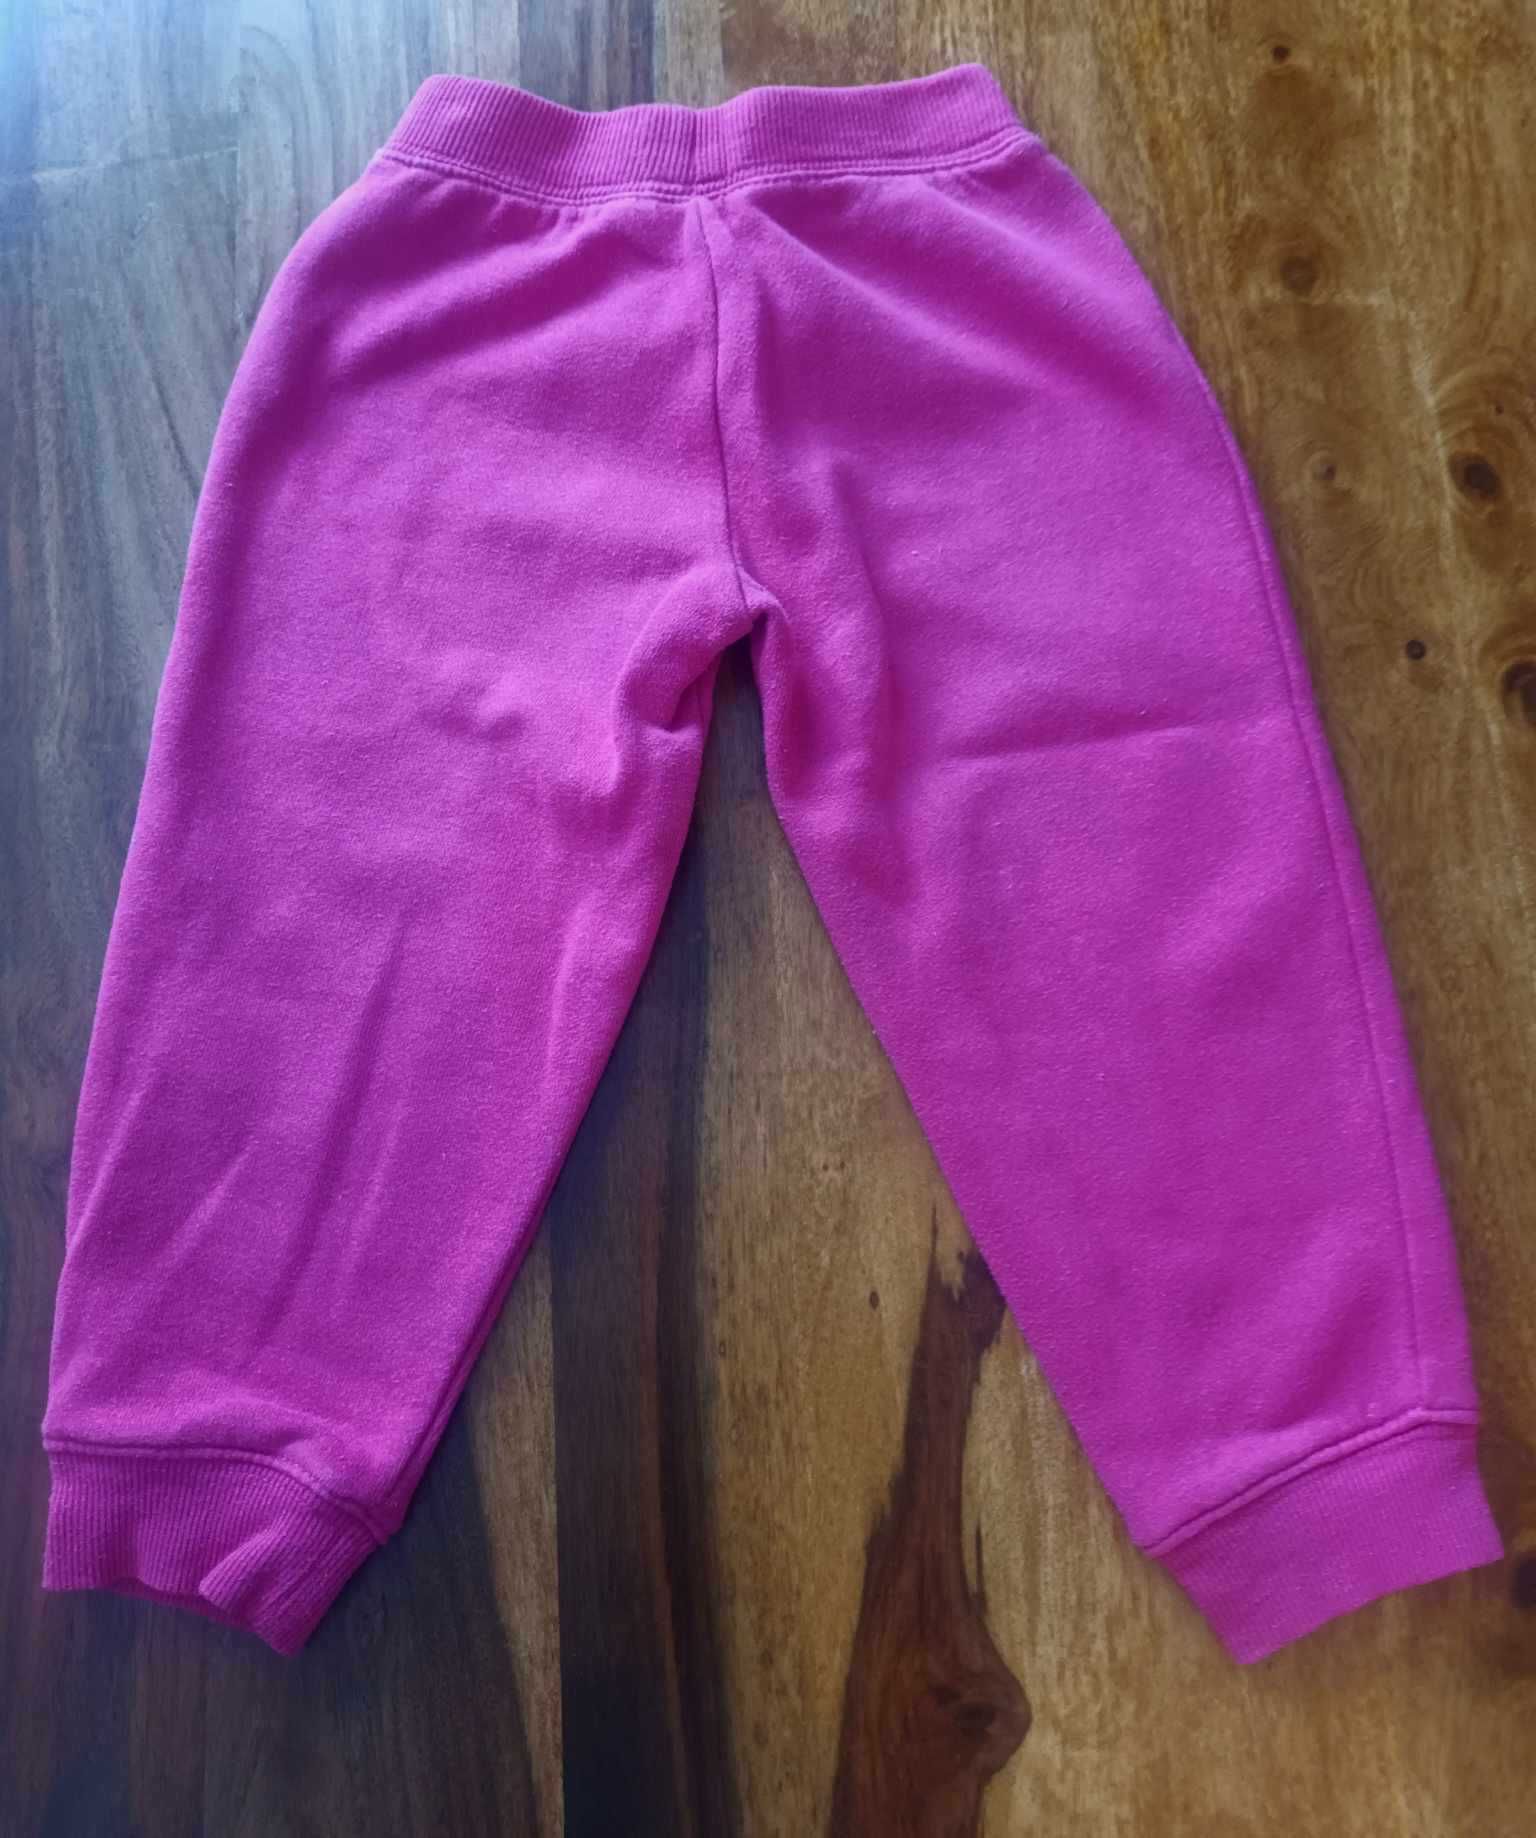 Spodnie dresy różowe 2-3 lata (92 cm)